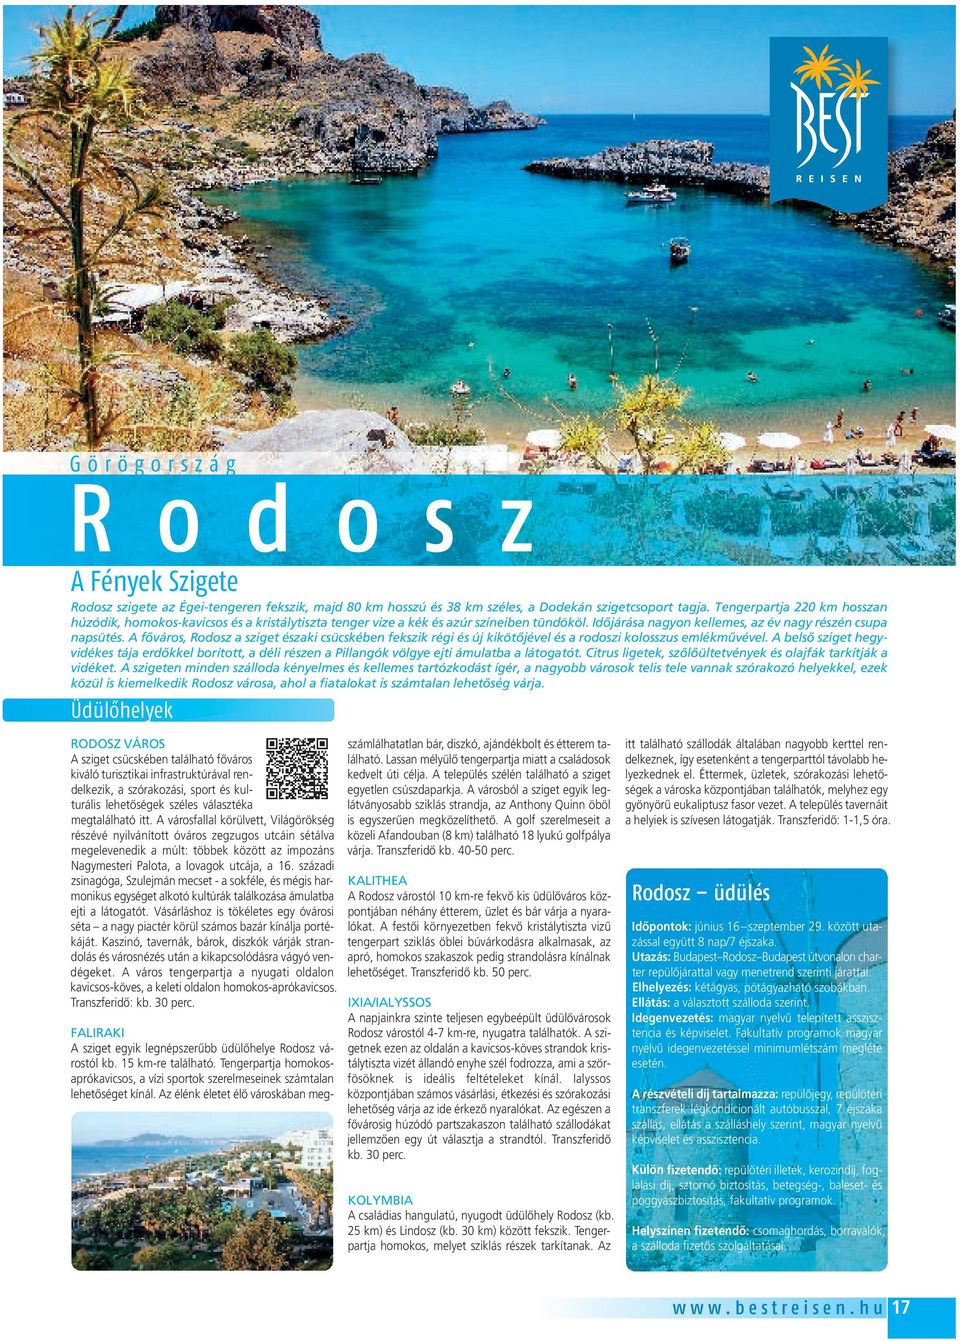 A fôváros, Rodosz a sziget északi csücskében fekszik régi és új kikötôjével és a rodoszi kolosszus emlékmûvével.